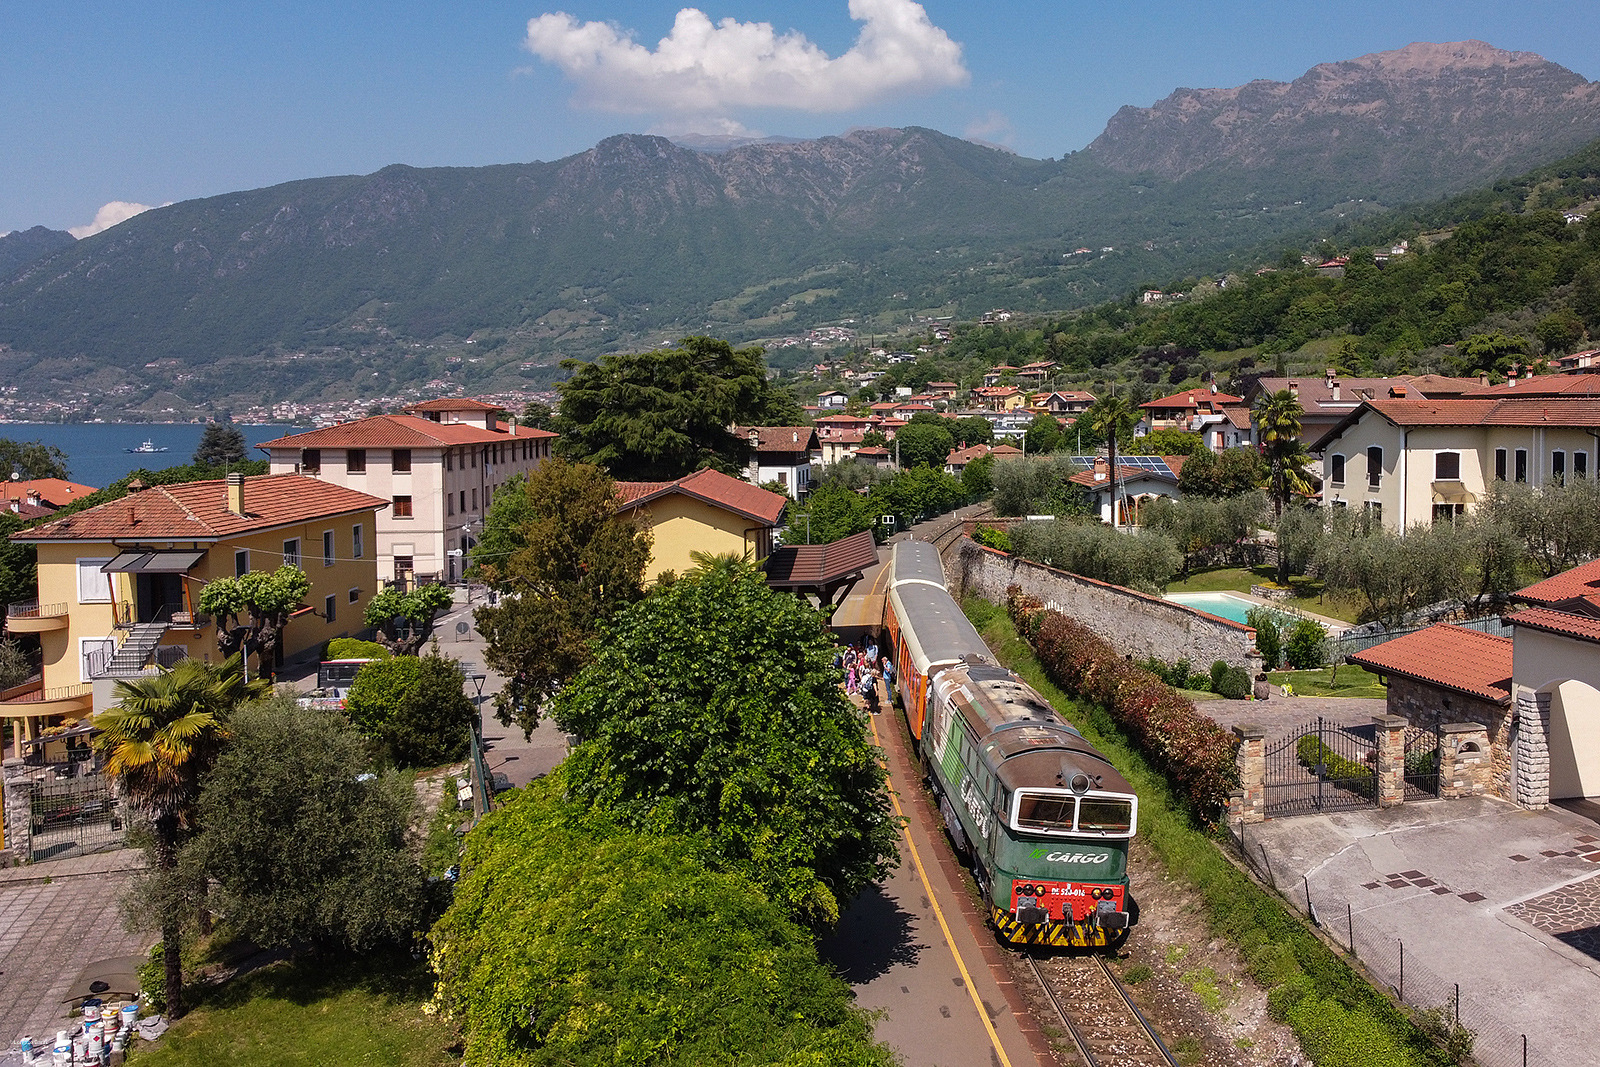 Trenord DE520 016 / Sulzano, Lombardy — Trainspo